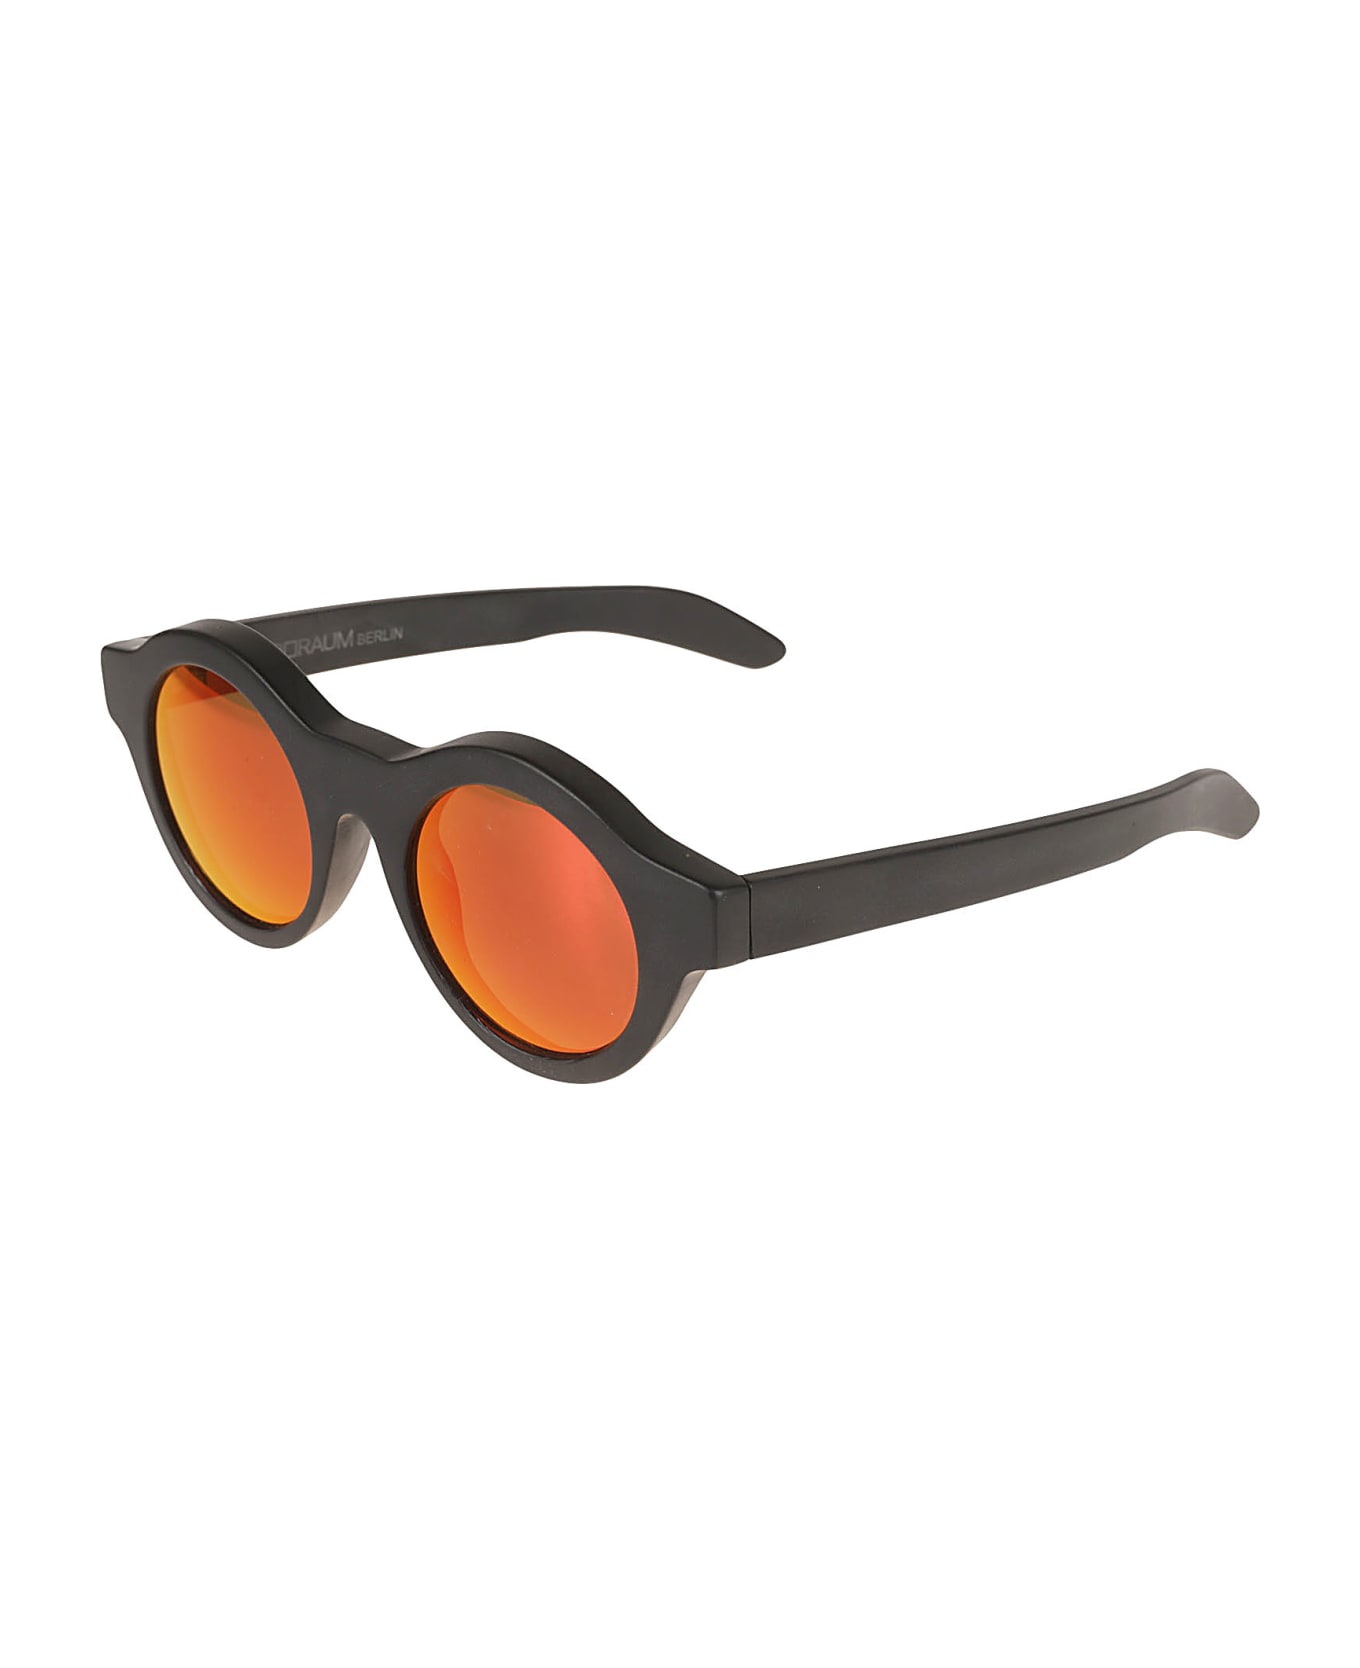 Kuboraum Maske A1 Sunglasses - Black